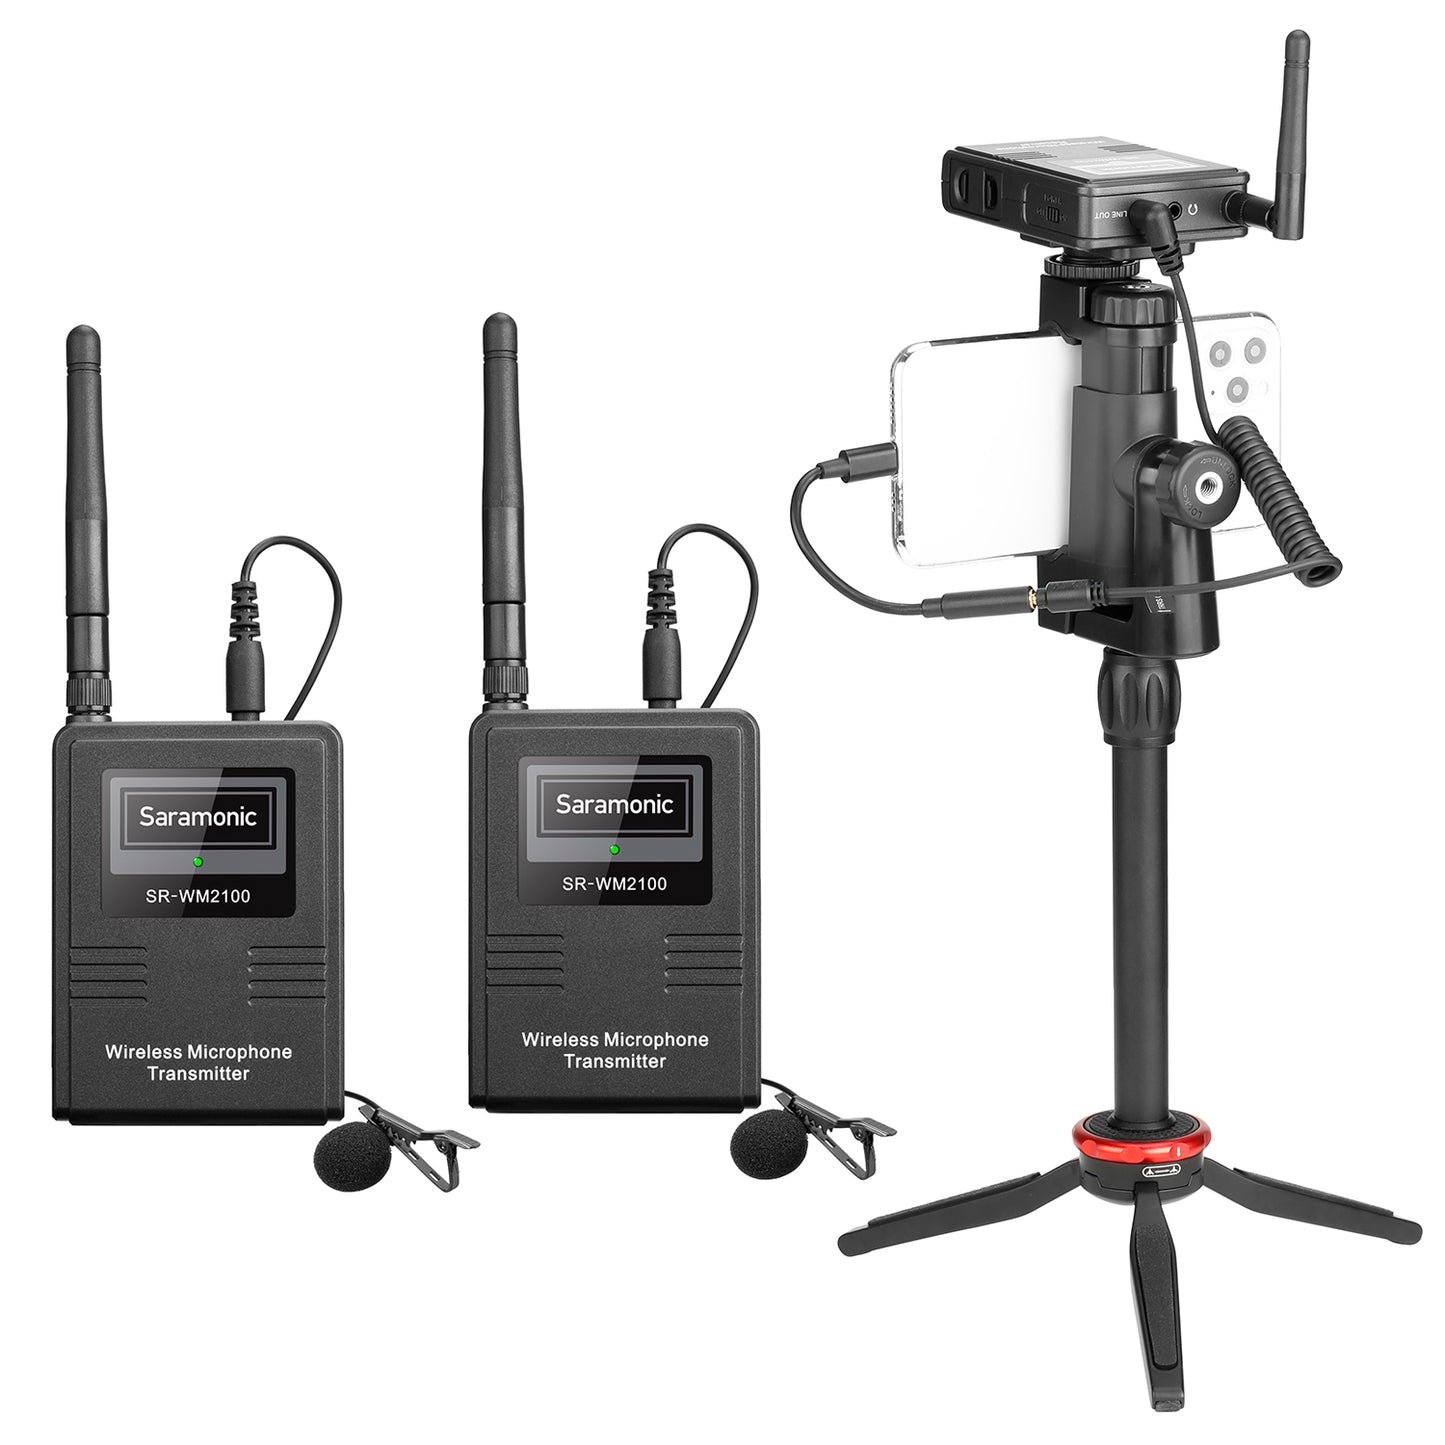 Saramonic SR-WM2100 2.4GHz Dual Wireless Microphone System